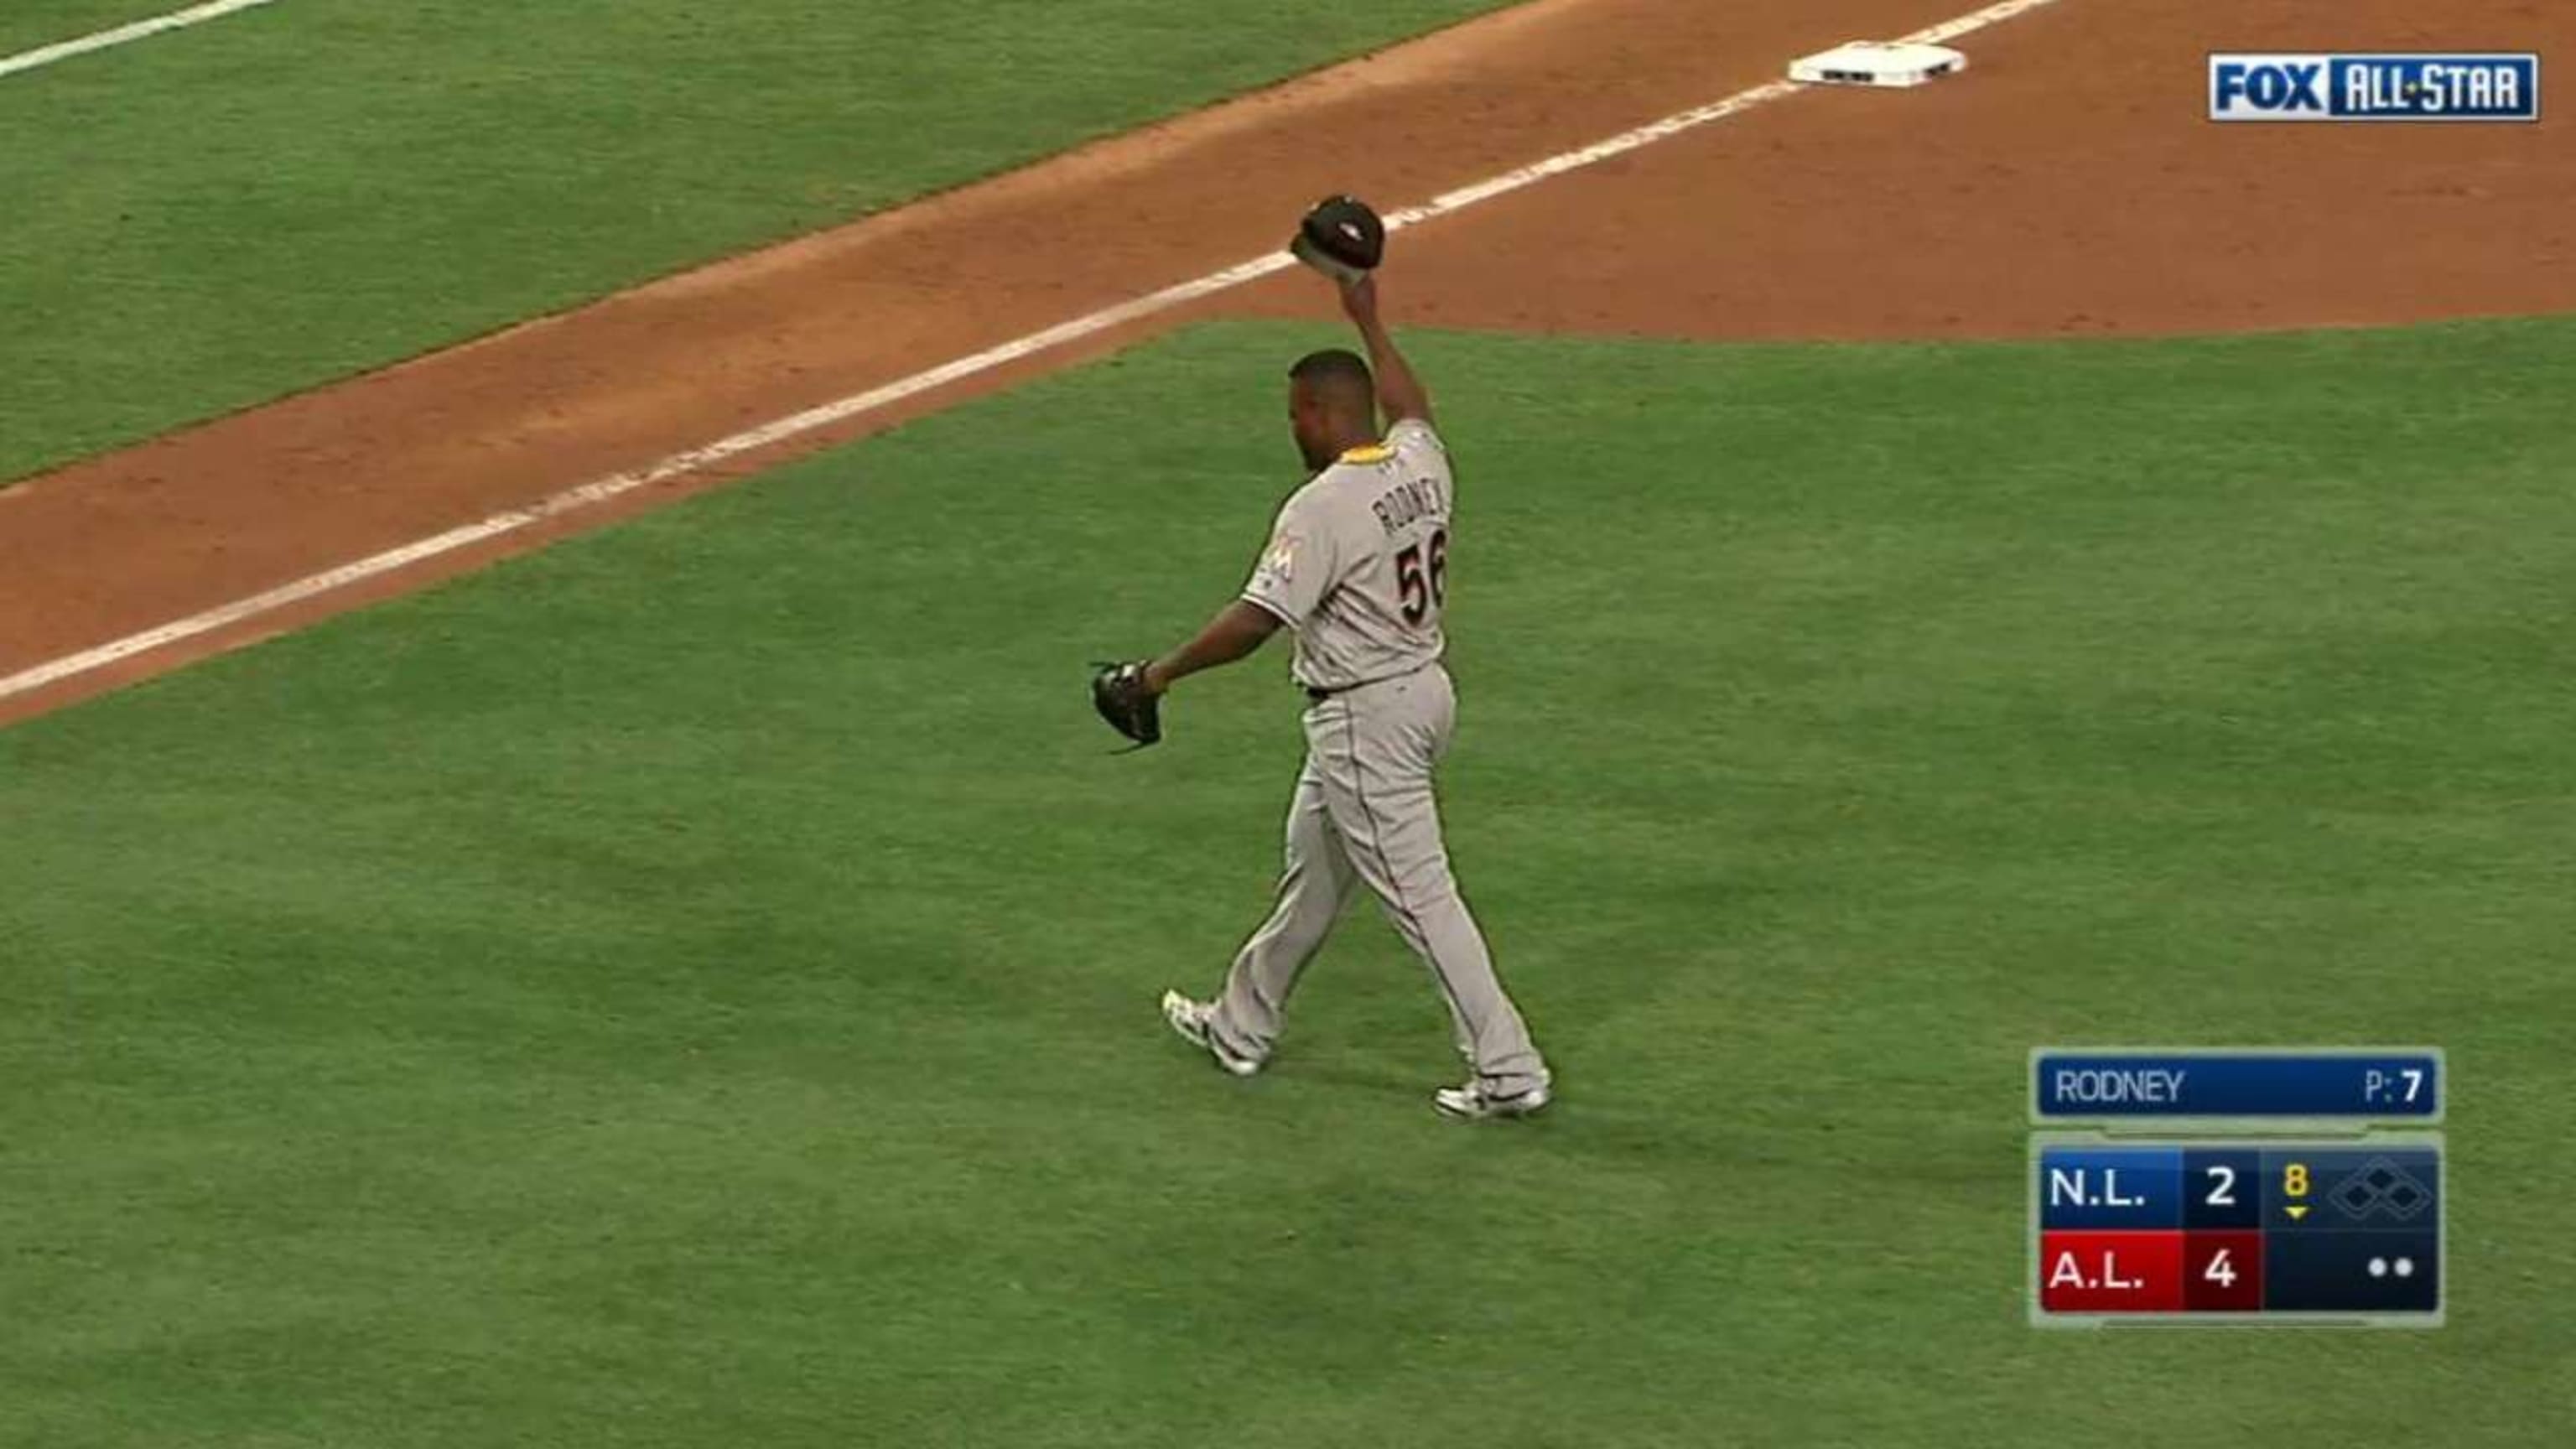 MLB All-Star Game: Jose Fernandez will help David Ortiz - SI Kids